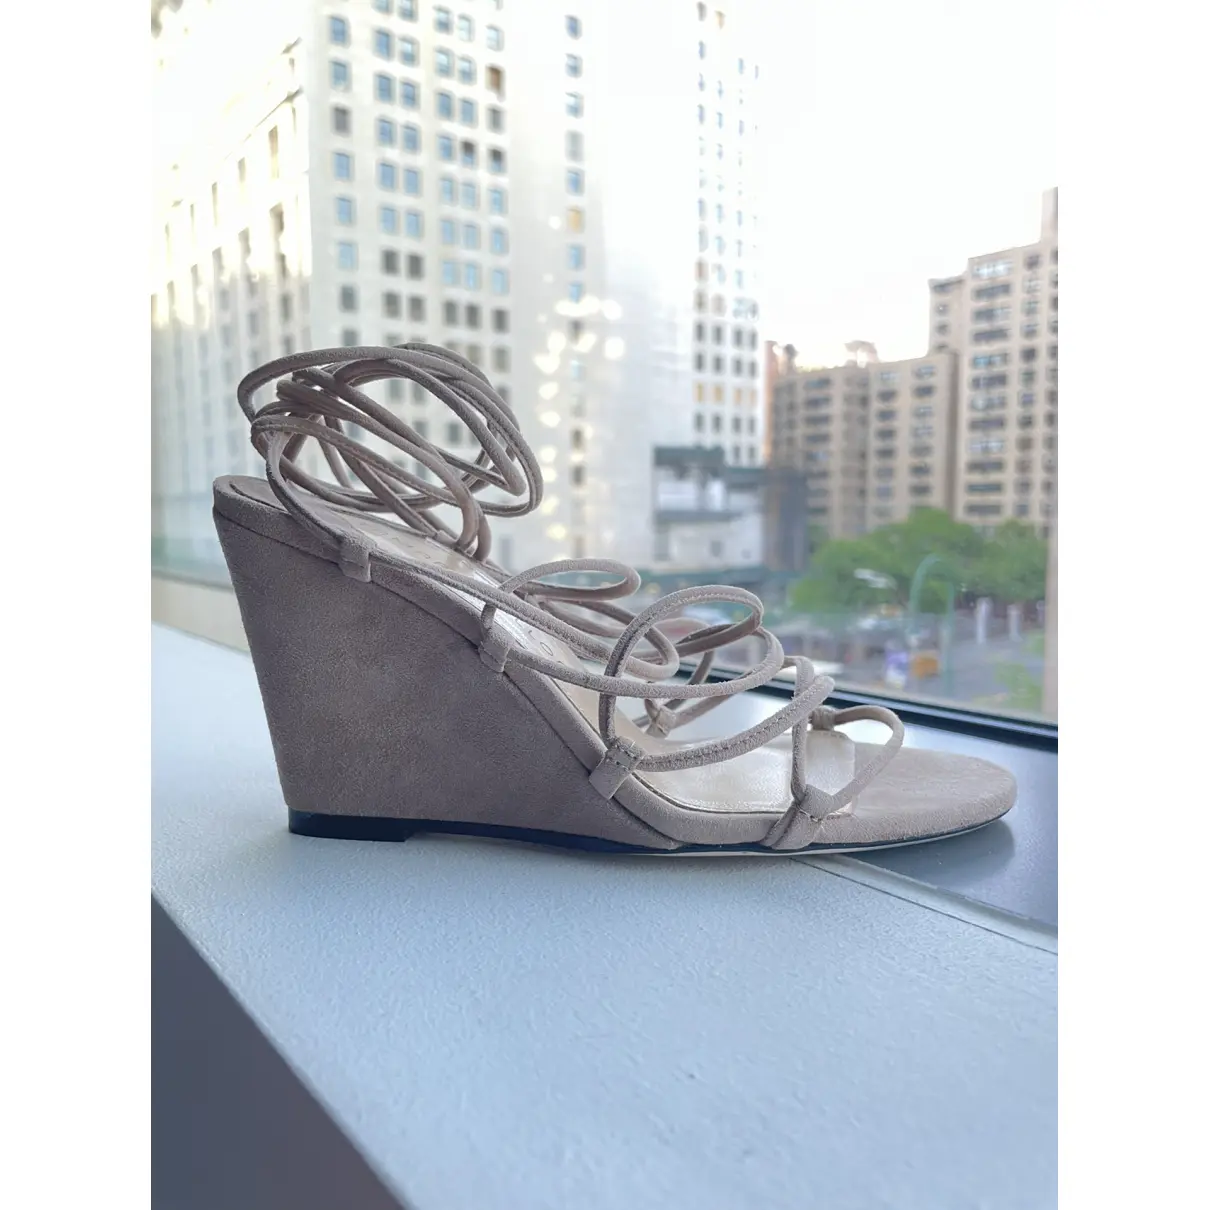 Luxury Tamara Mellon Sandals Women